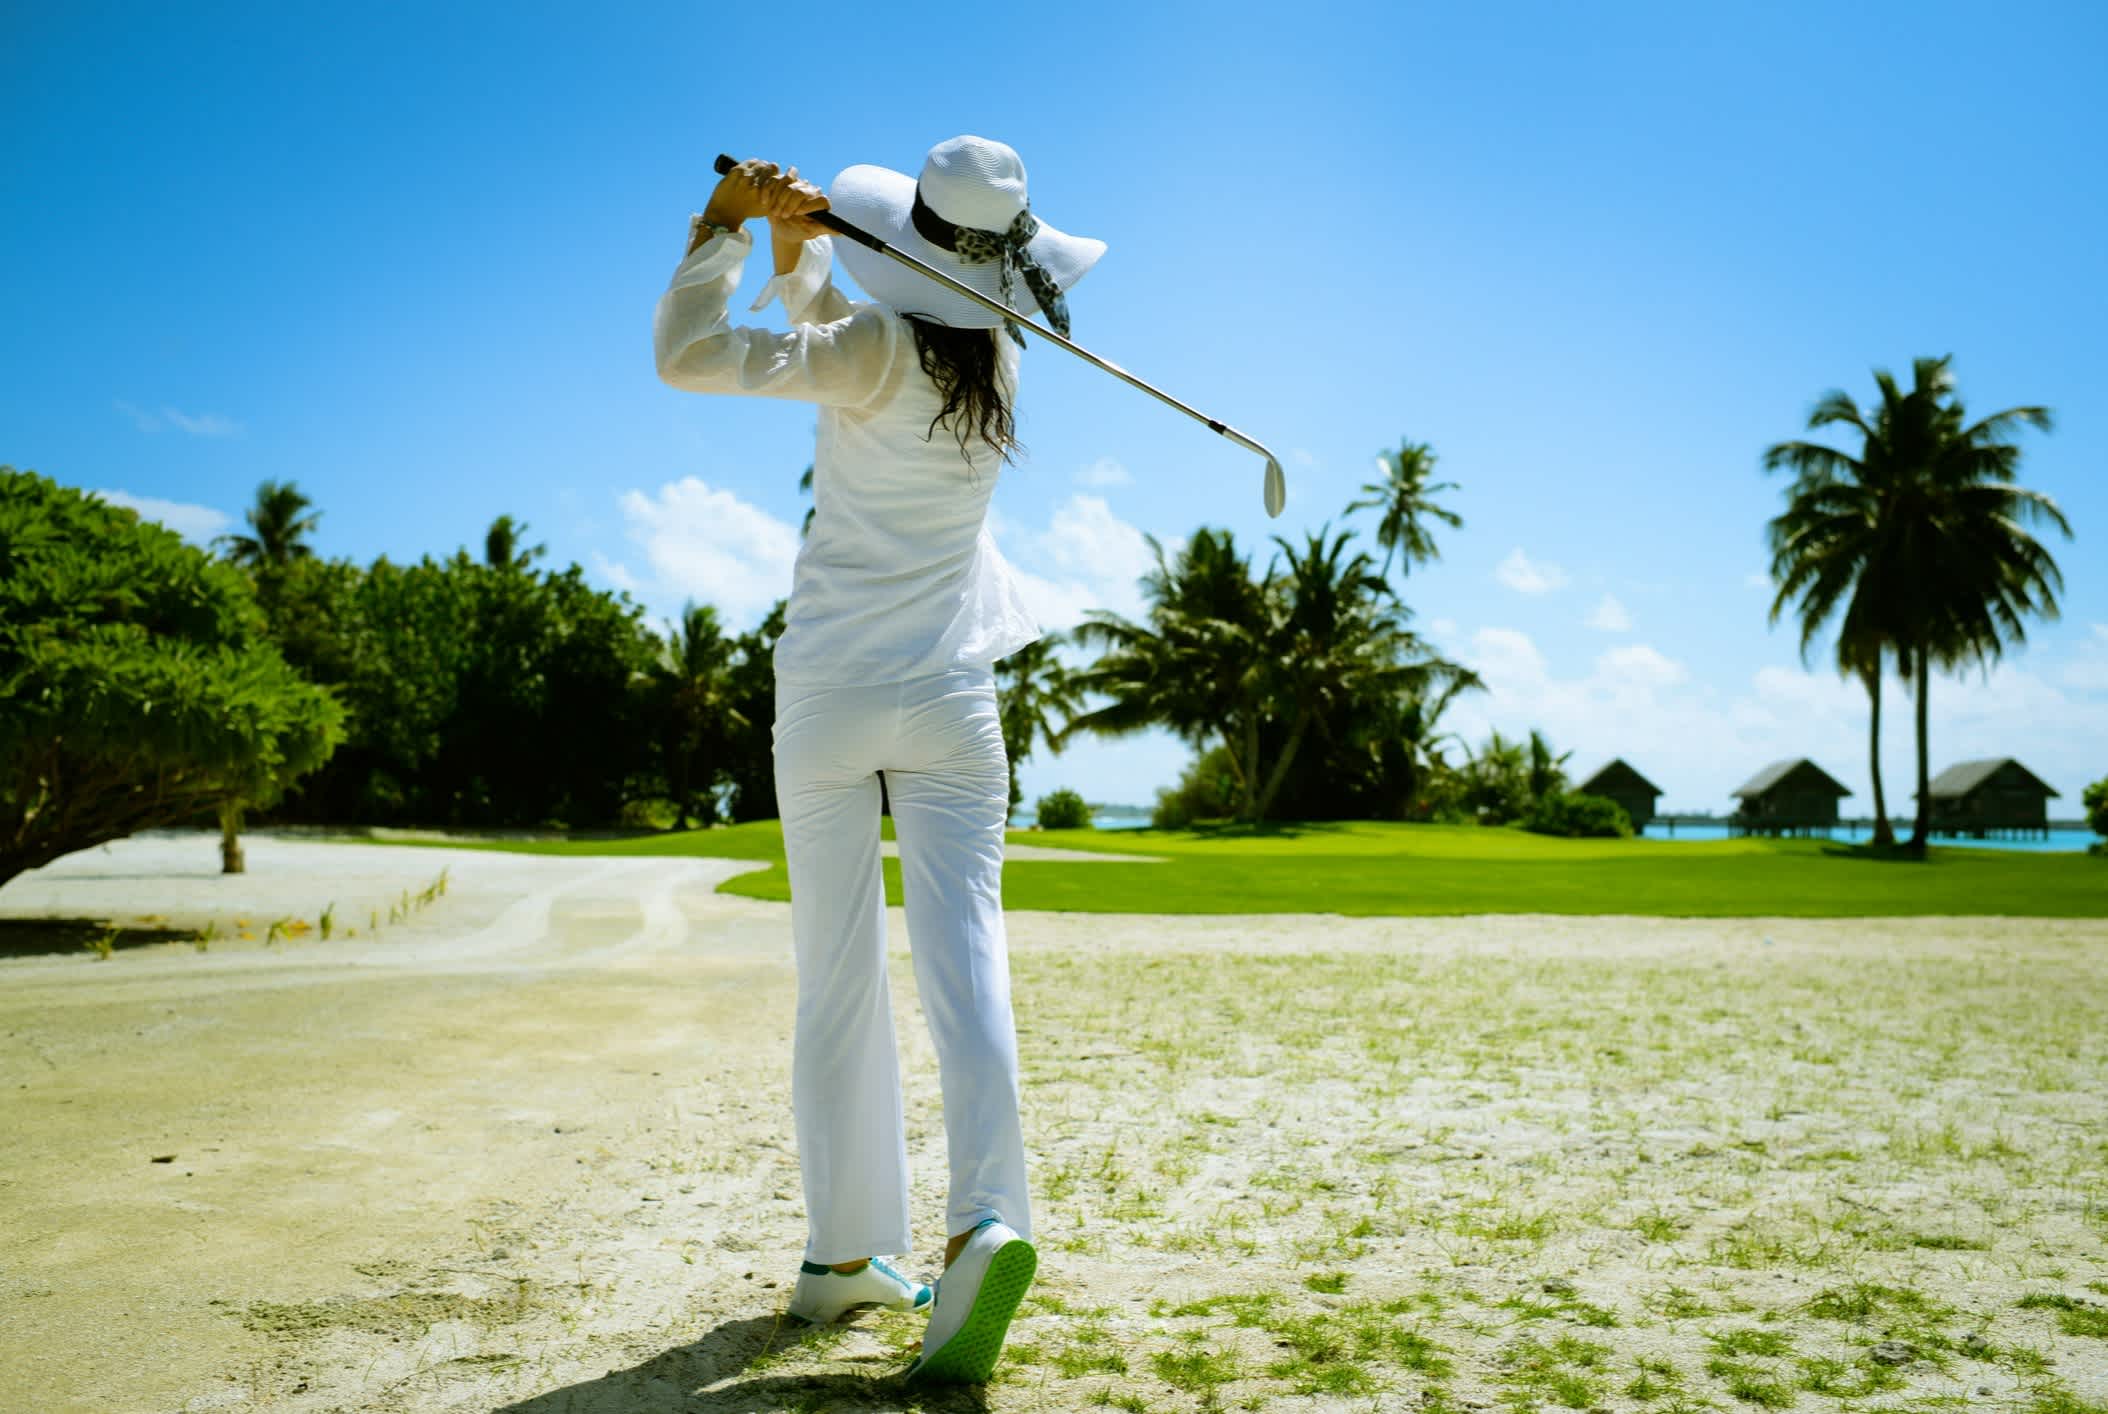 Une jeune femme joue au golf sur un terrain en bord de mer, Espagne